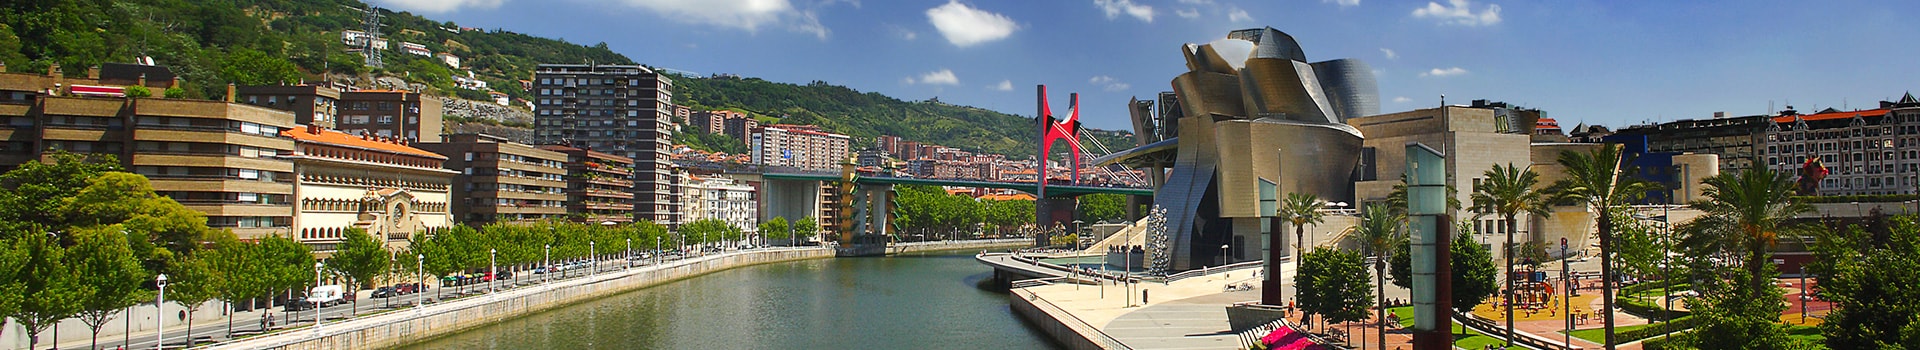 Lima - Bilbao